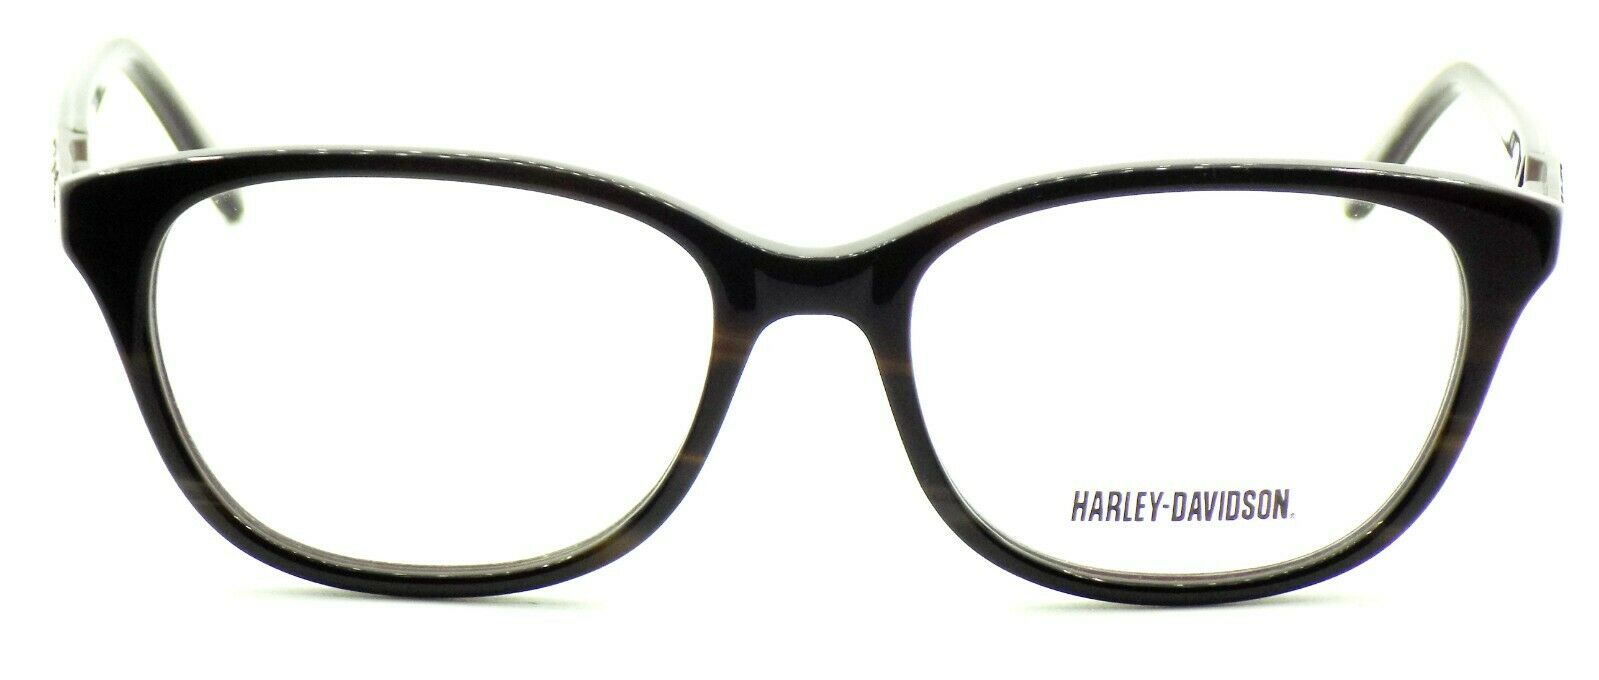 2-Harley Davidson HD0523 062 Women's Eyeglasses Frames 52-16-135 Brown Horn + CASE-664689756520-IKSpecs